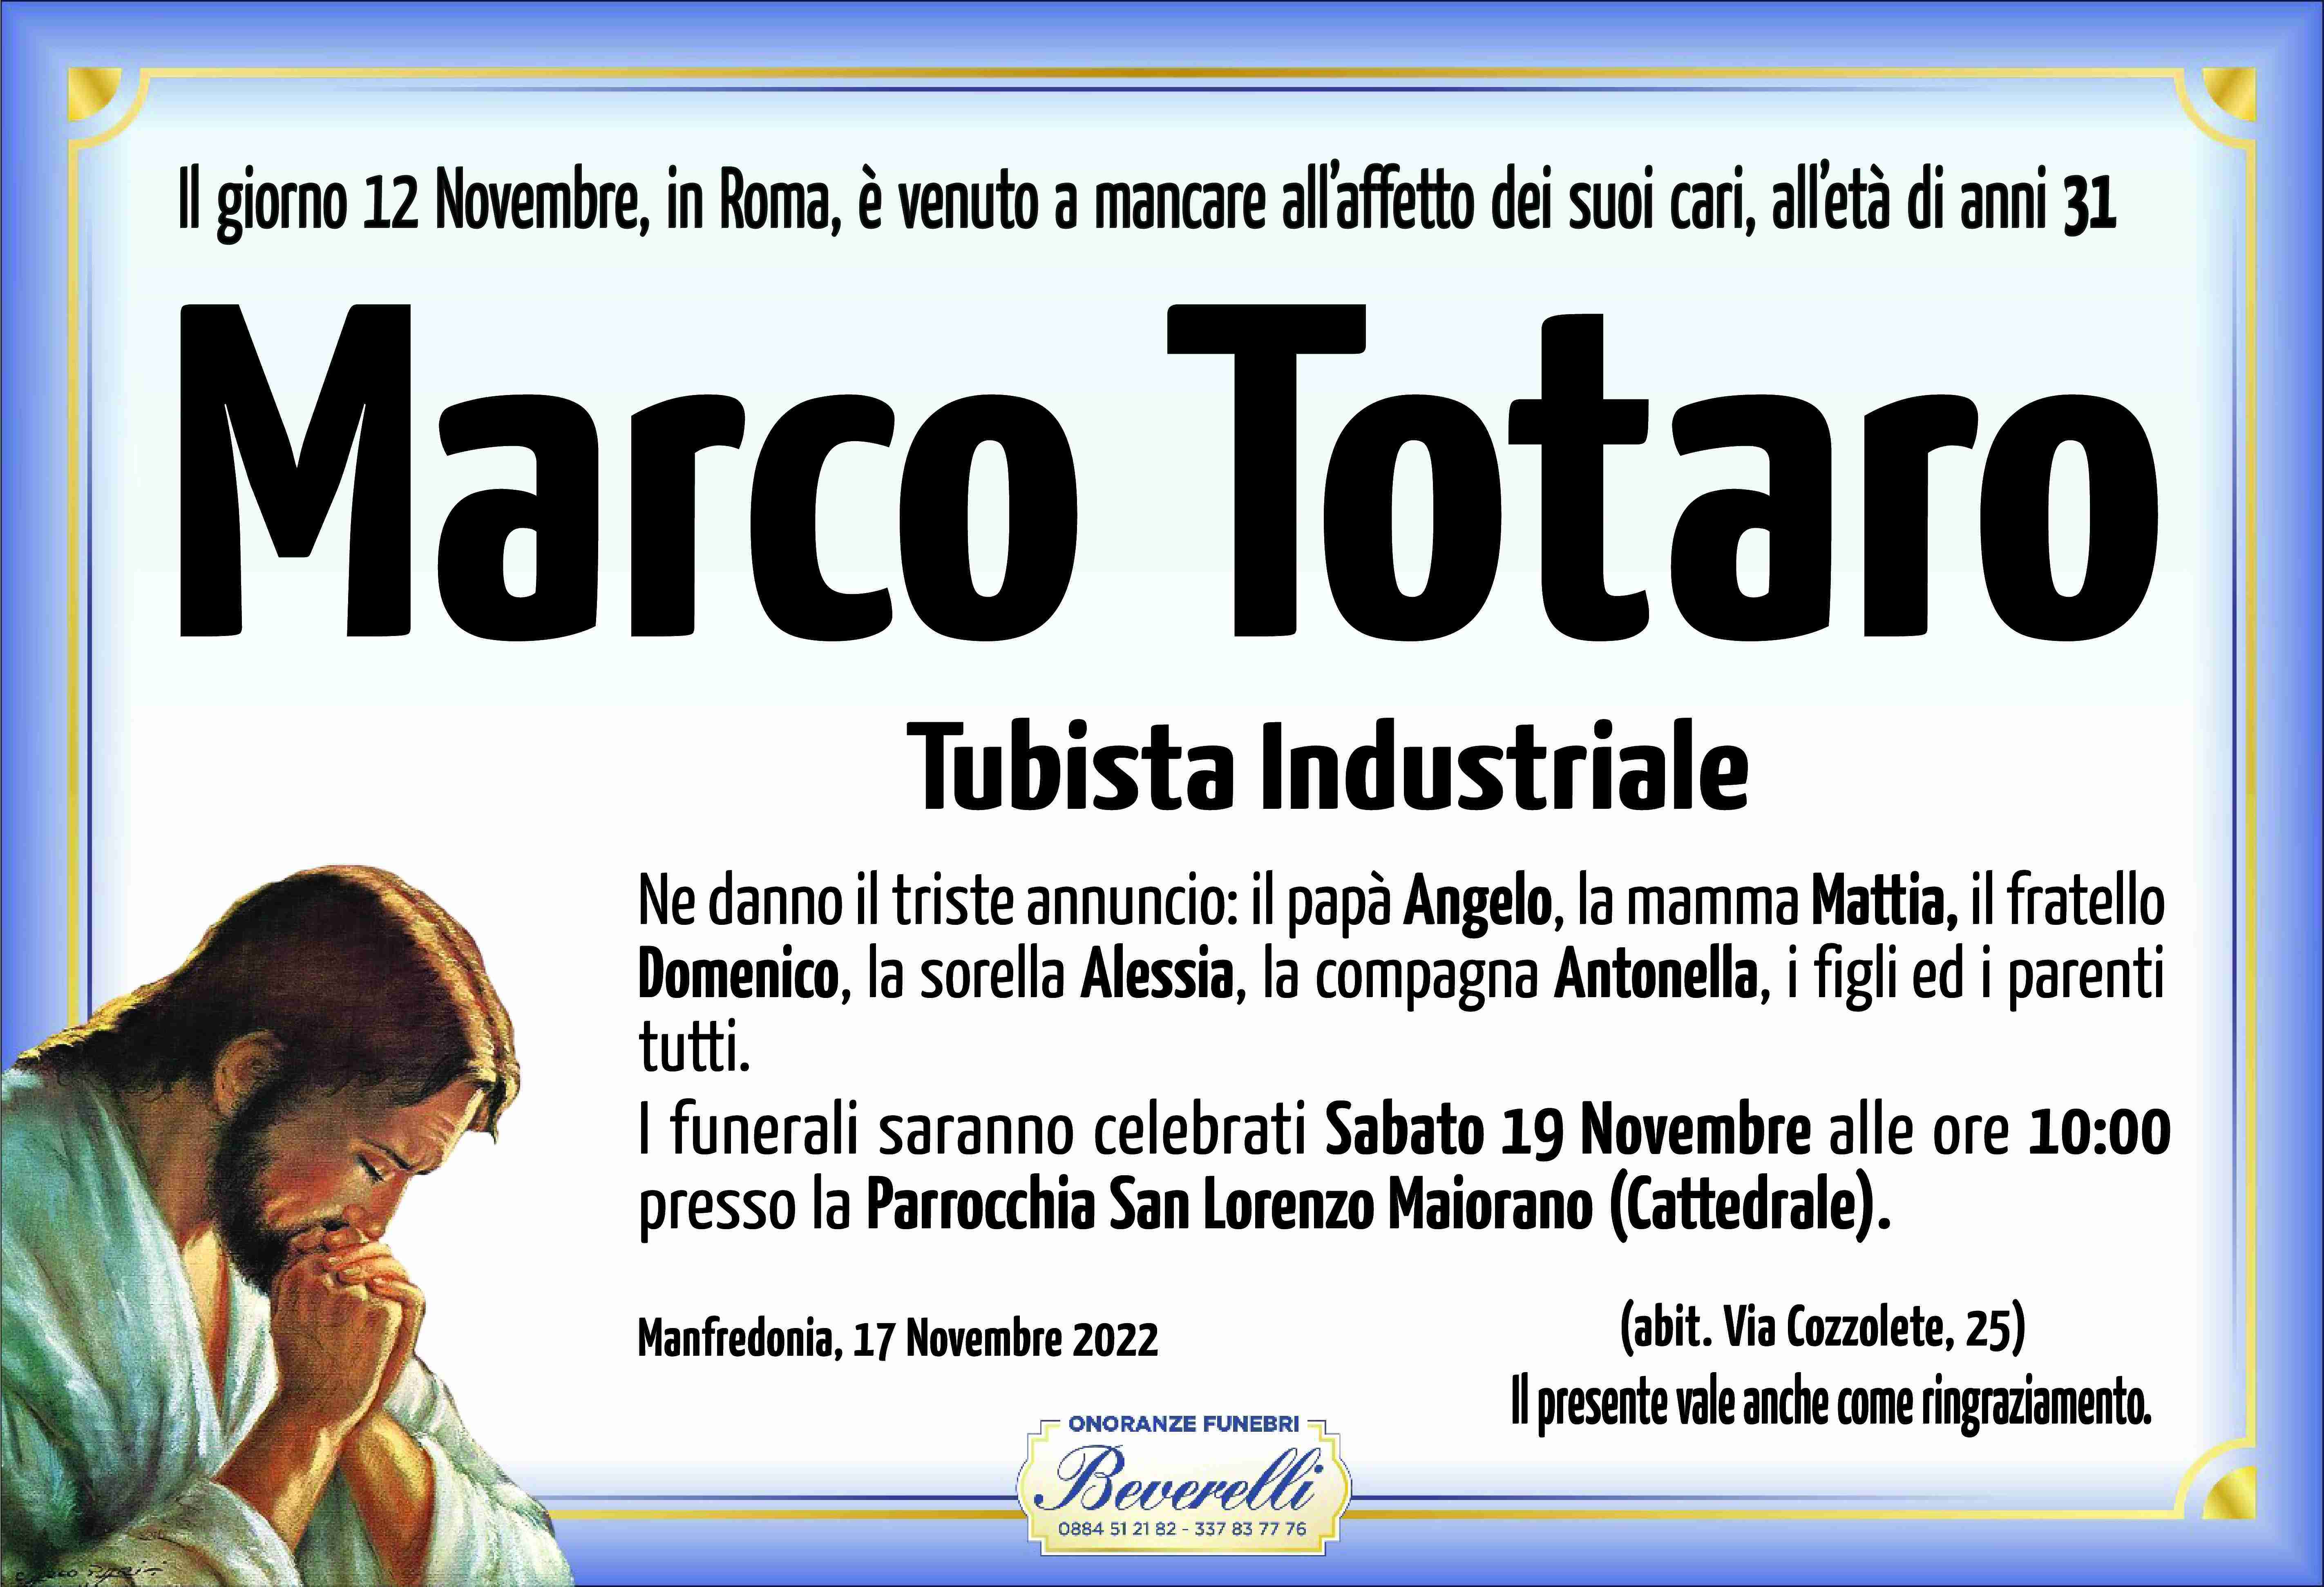 Marco Totaro